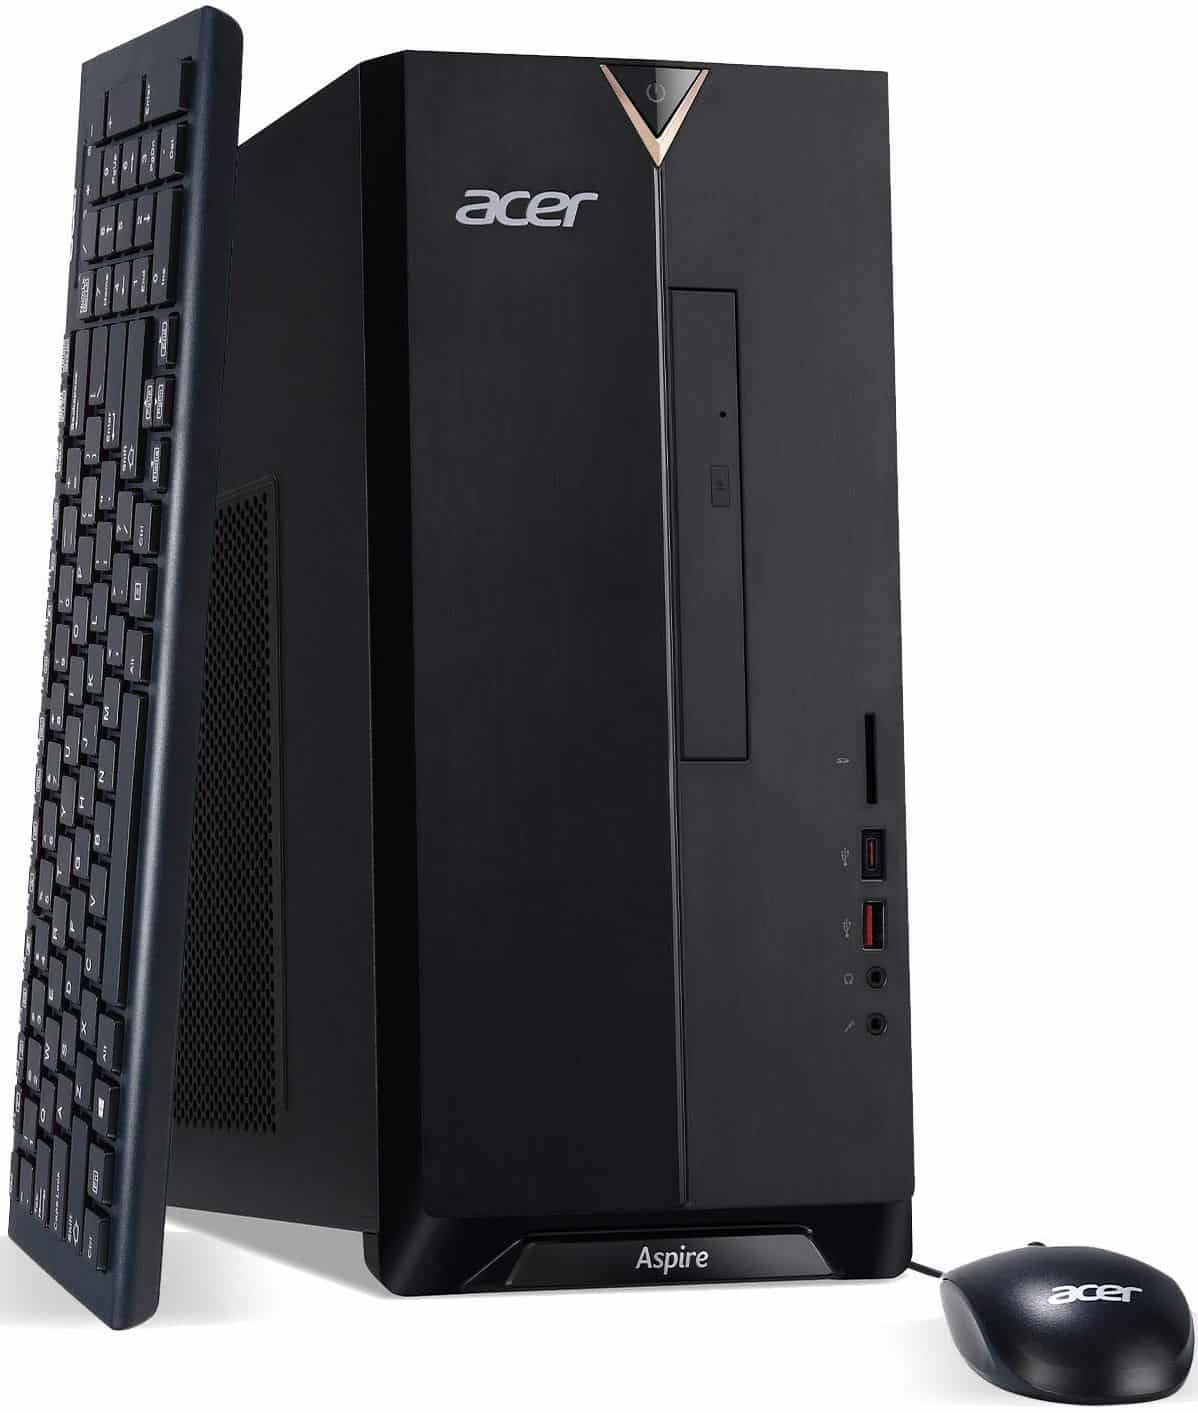 Acer Aspire $500 gaming pc Jan 2020